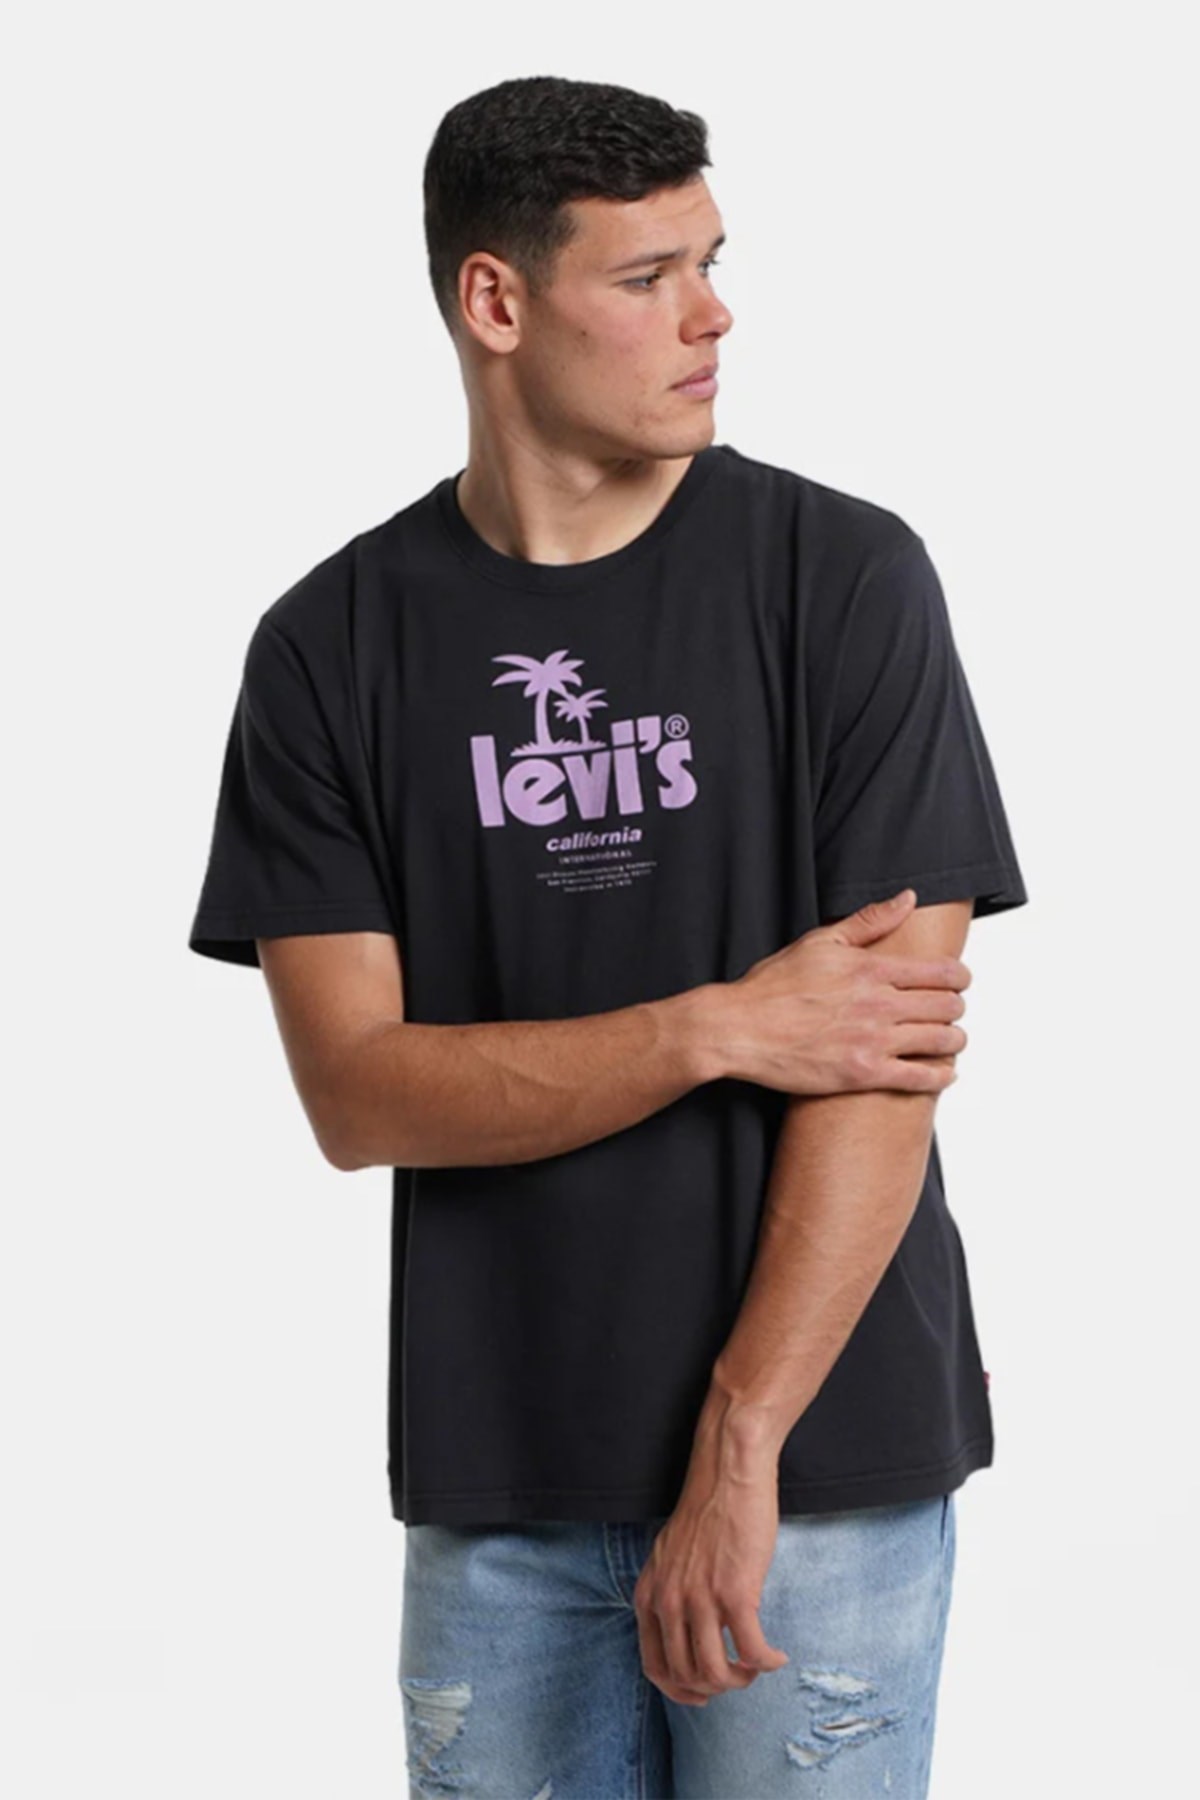 Levis Erkek T-Shirt 16143-0485 